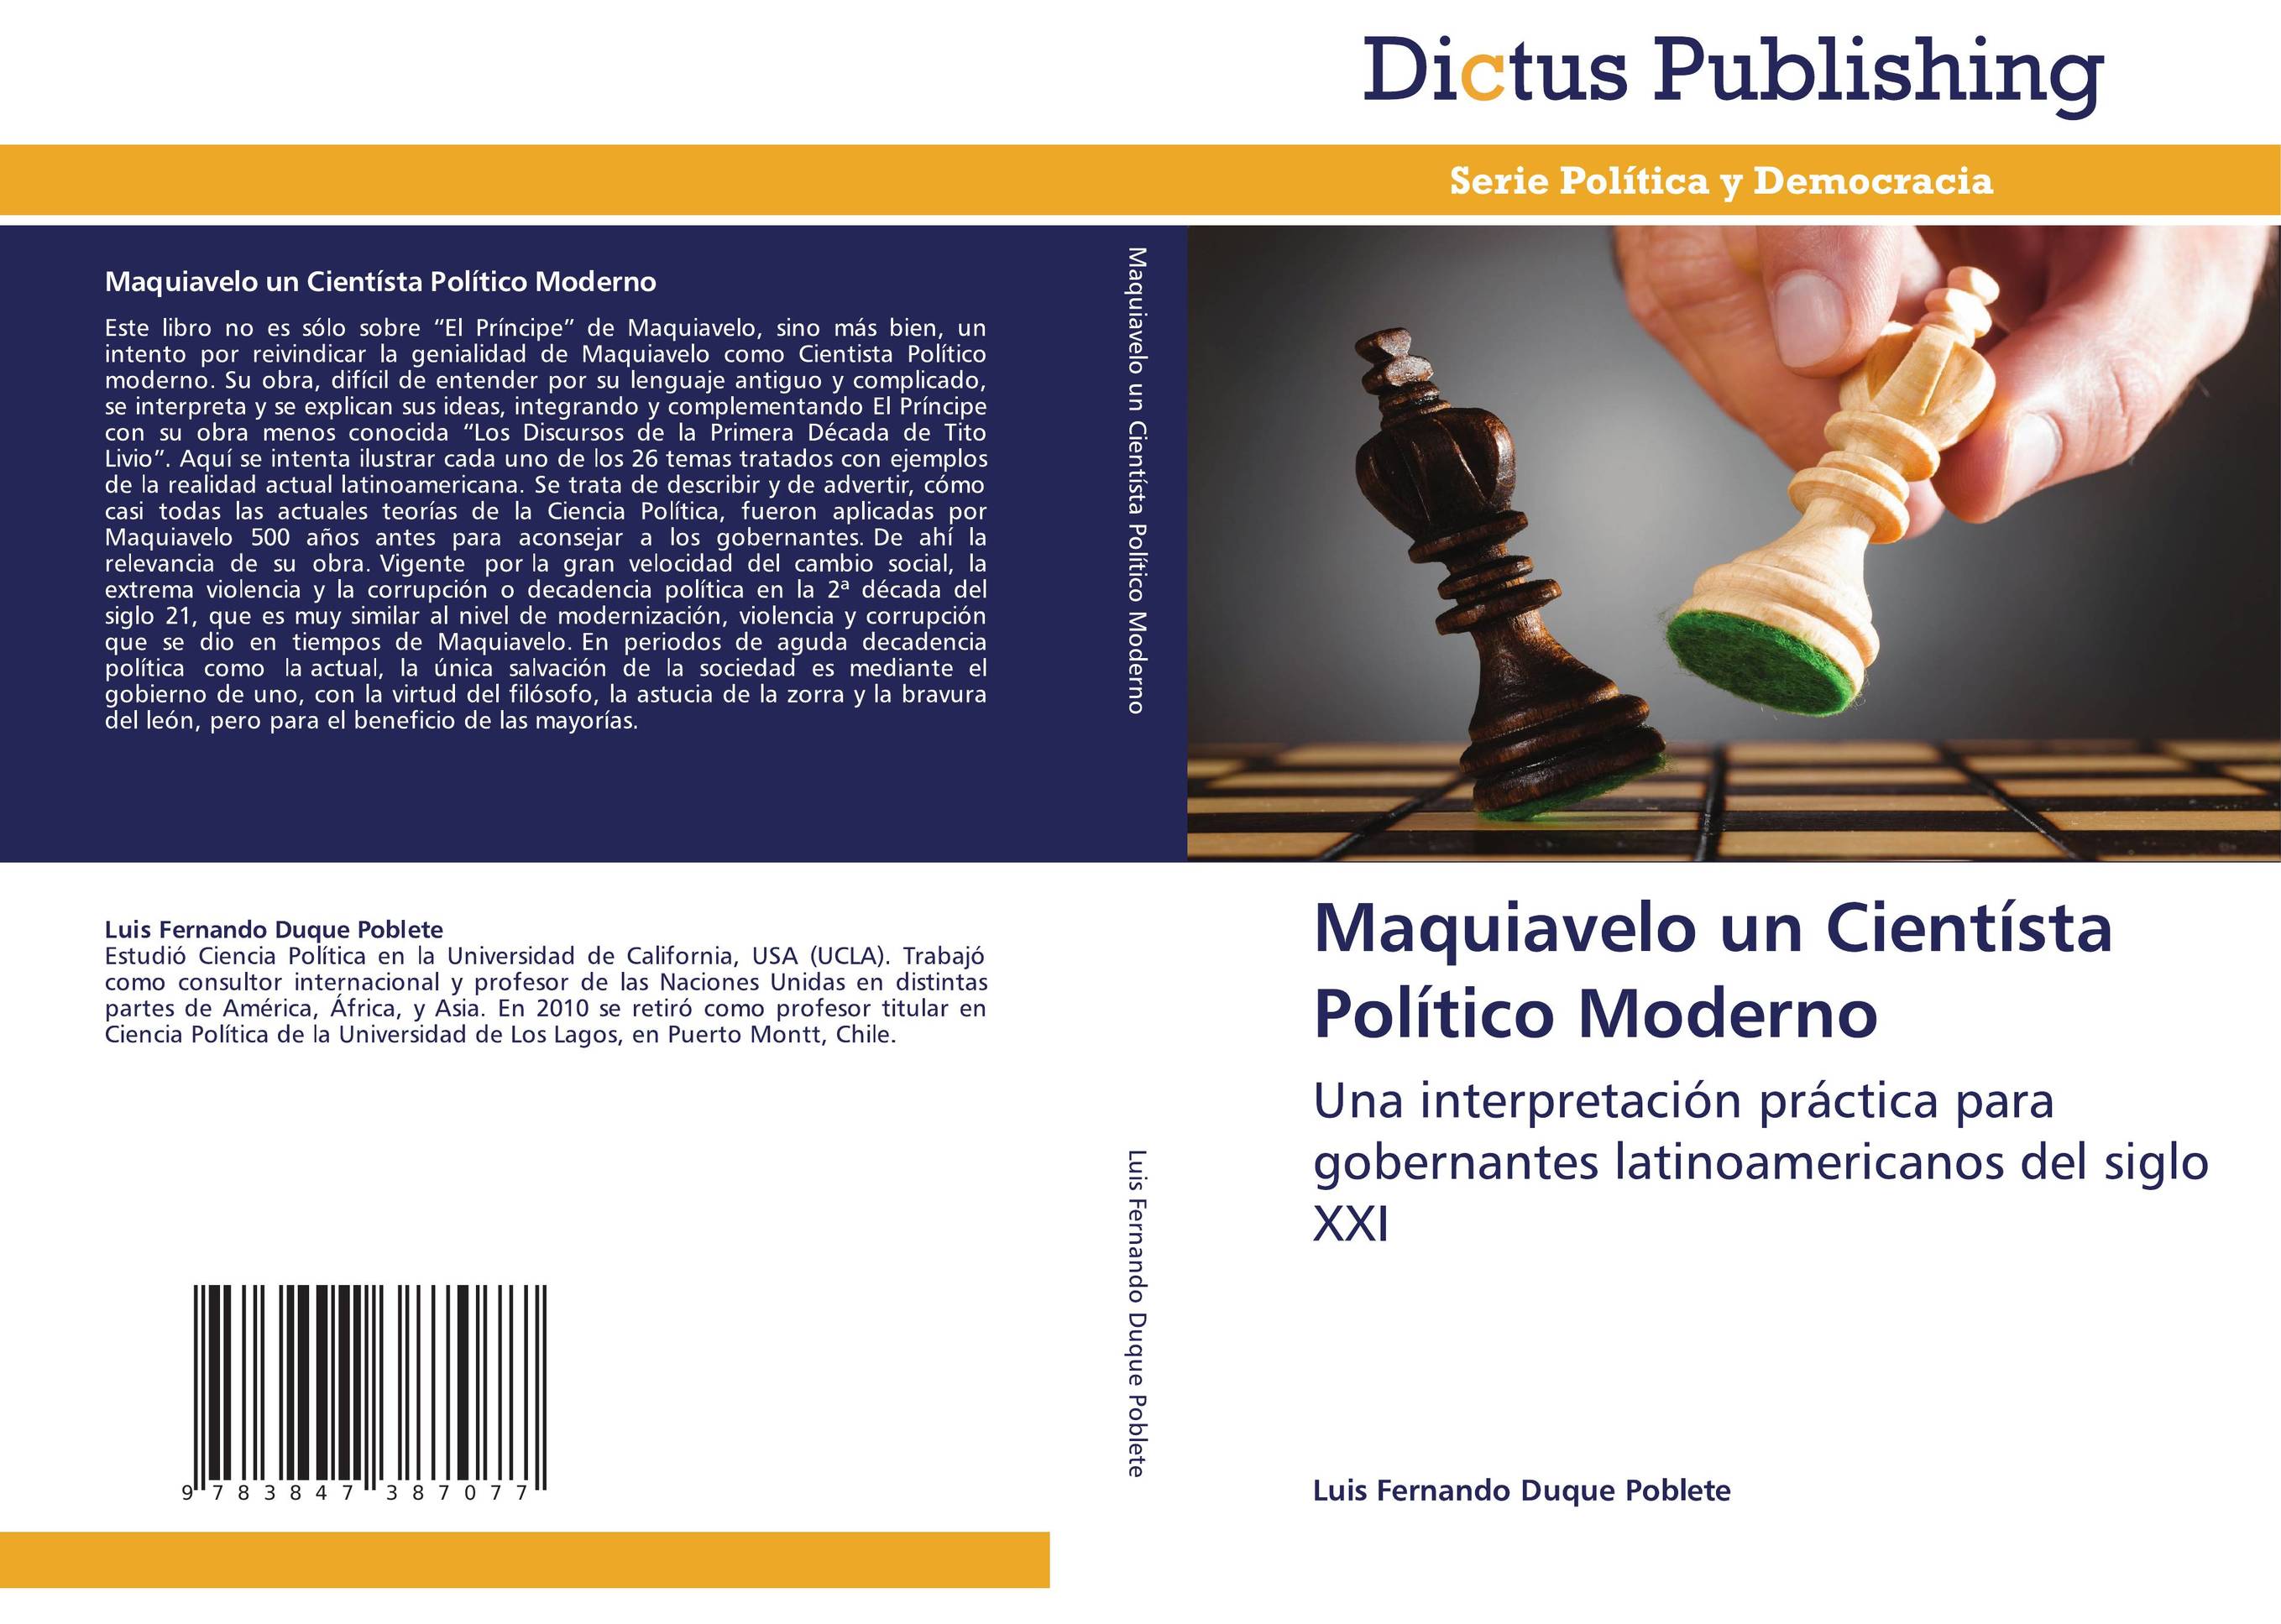 Maquiavelo un Cientísta Político Moderno